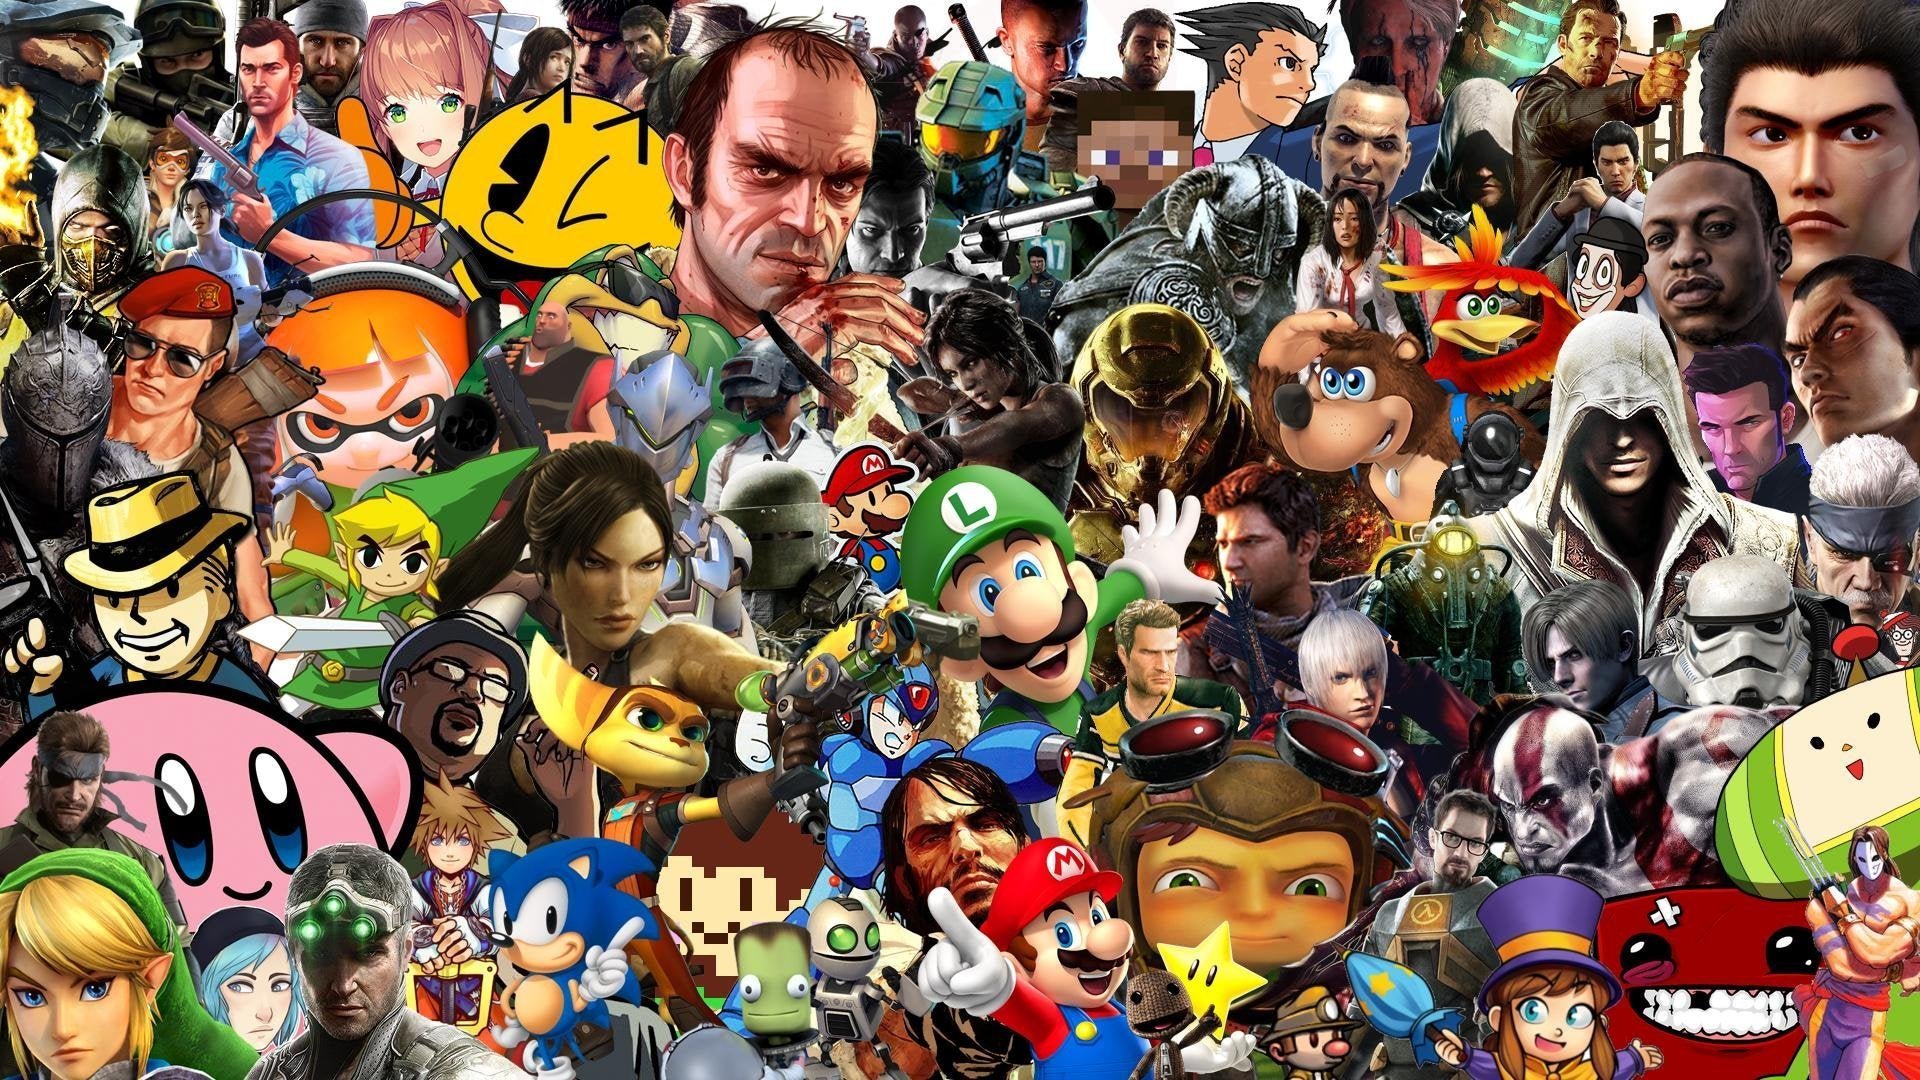 Игру где много игр в 1. Популярные персонажи. Персонажи игр. Разные персонажи. Персонажи из разных игр.